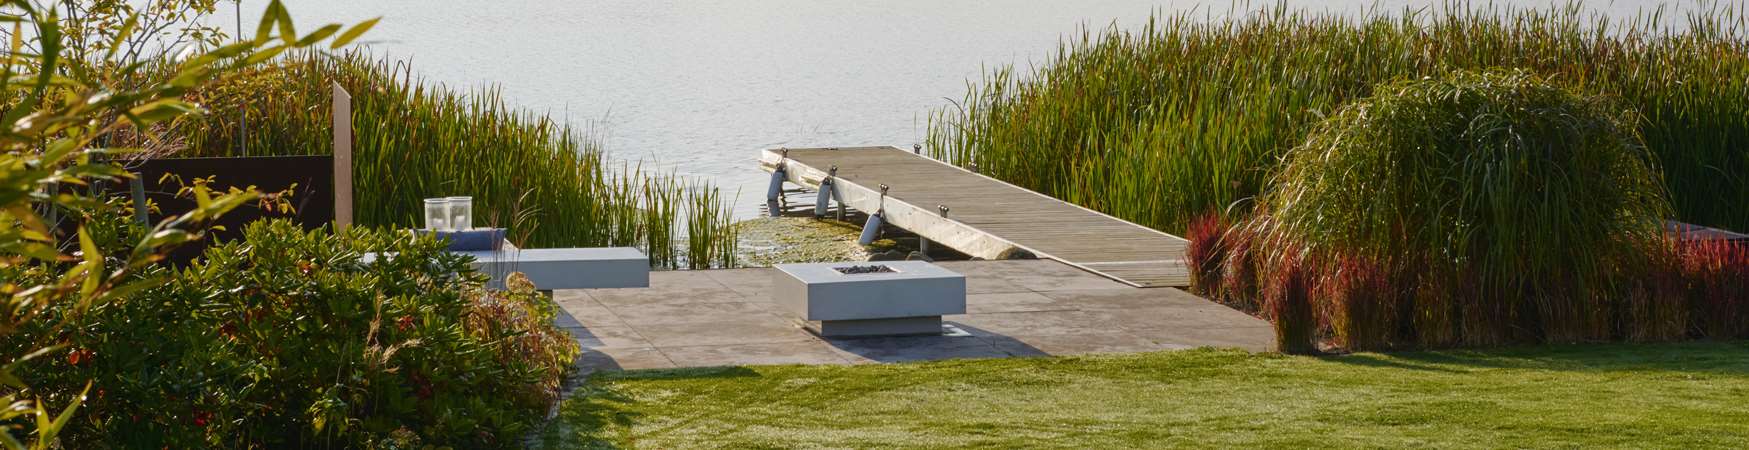 Træterrasse med Haddeland Lounge og gasbål ved sø designet af havearkitekt Tor Haddeland